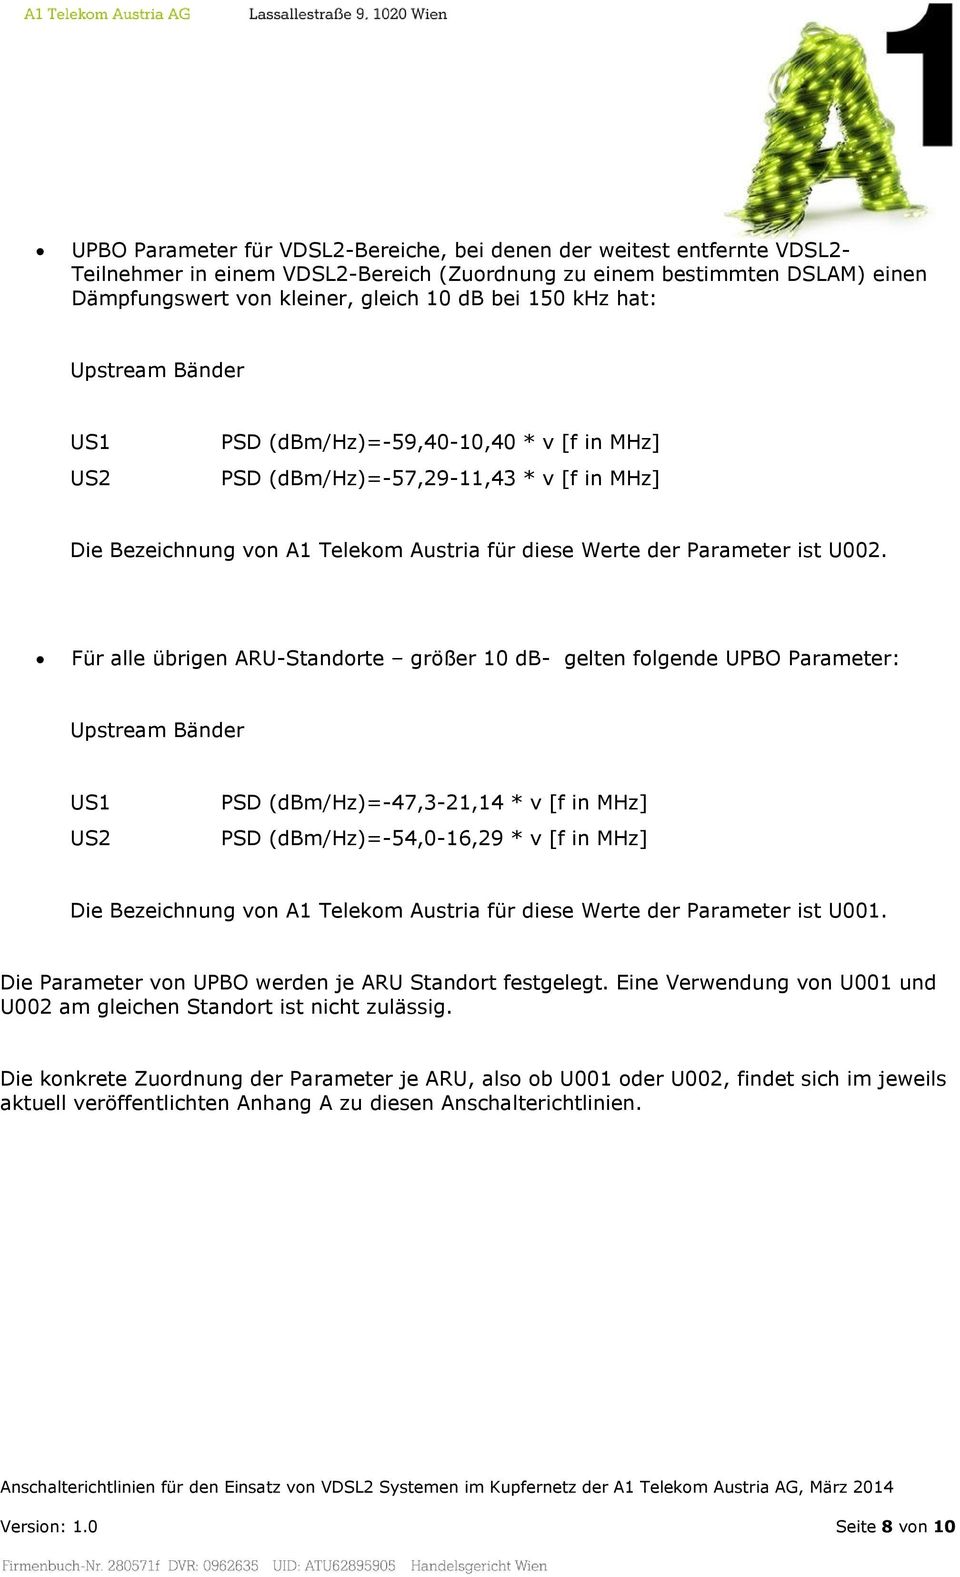 Für alle übrigen ARU-Standorte größer 10 db- gelten folgende UPBO Parameter: Upstream Bänder US1 US2 PSD (dbm/hz)=-47,3-21,14 * v [f in MHz] PSD (dbm/hz)=-54,0-16,29 * v [f in MHz] Die Bezeichnung